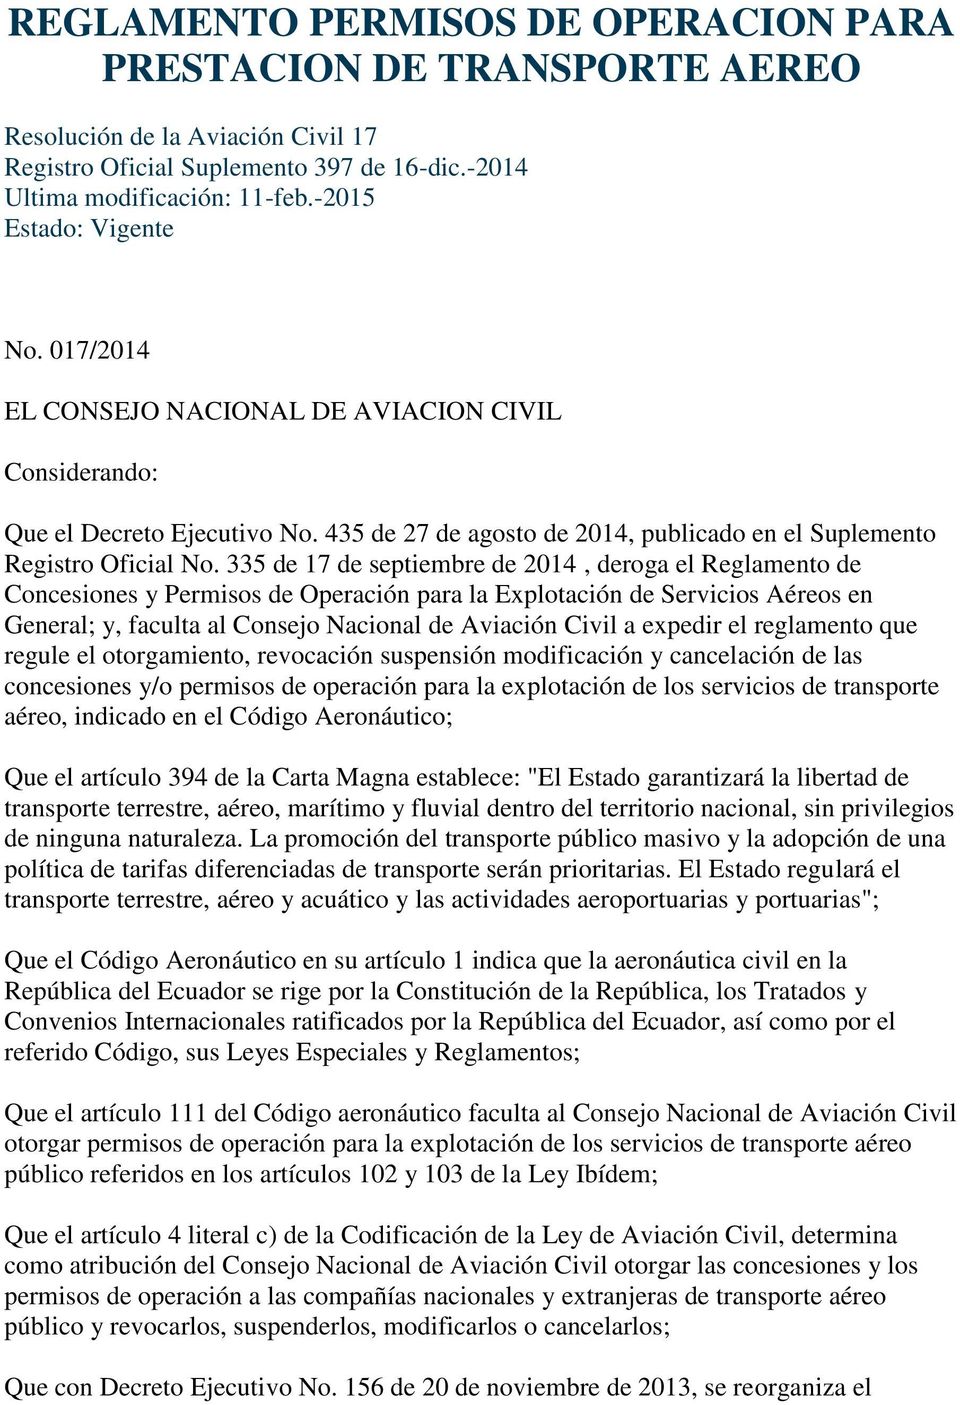 335 de 17 de septiembre de 2014, deroga el Reglamento de Concesiones y Permisos de Operación para la Explotación de Servicios Aéreos en General; y, faculta al Consejo Nacional de Aviación Civil a